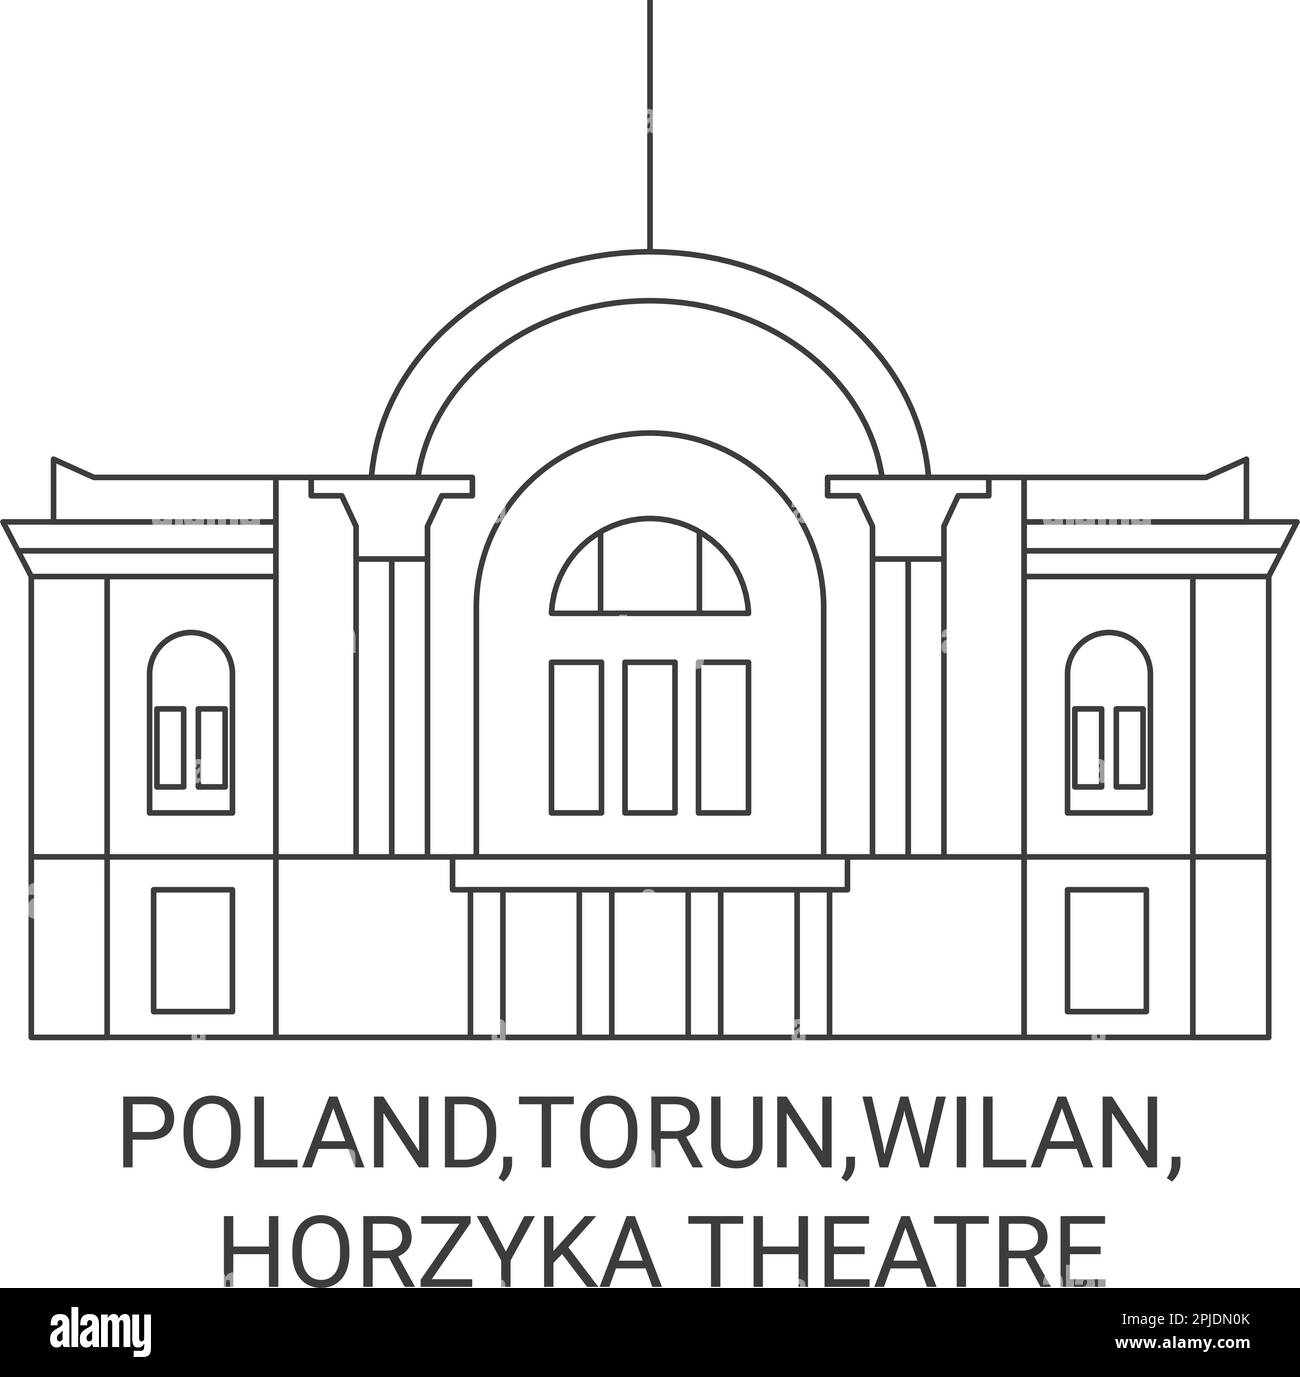 Poland,Torun,Wilan, Horzyka Theatre travel landmark vector illustration Stock Vector